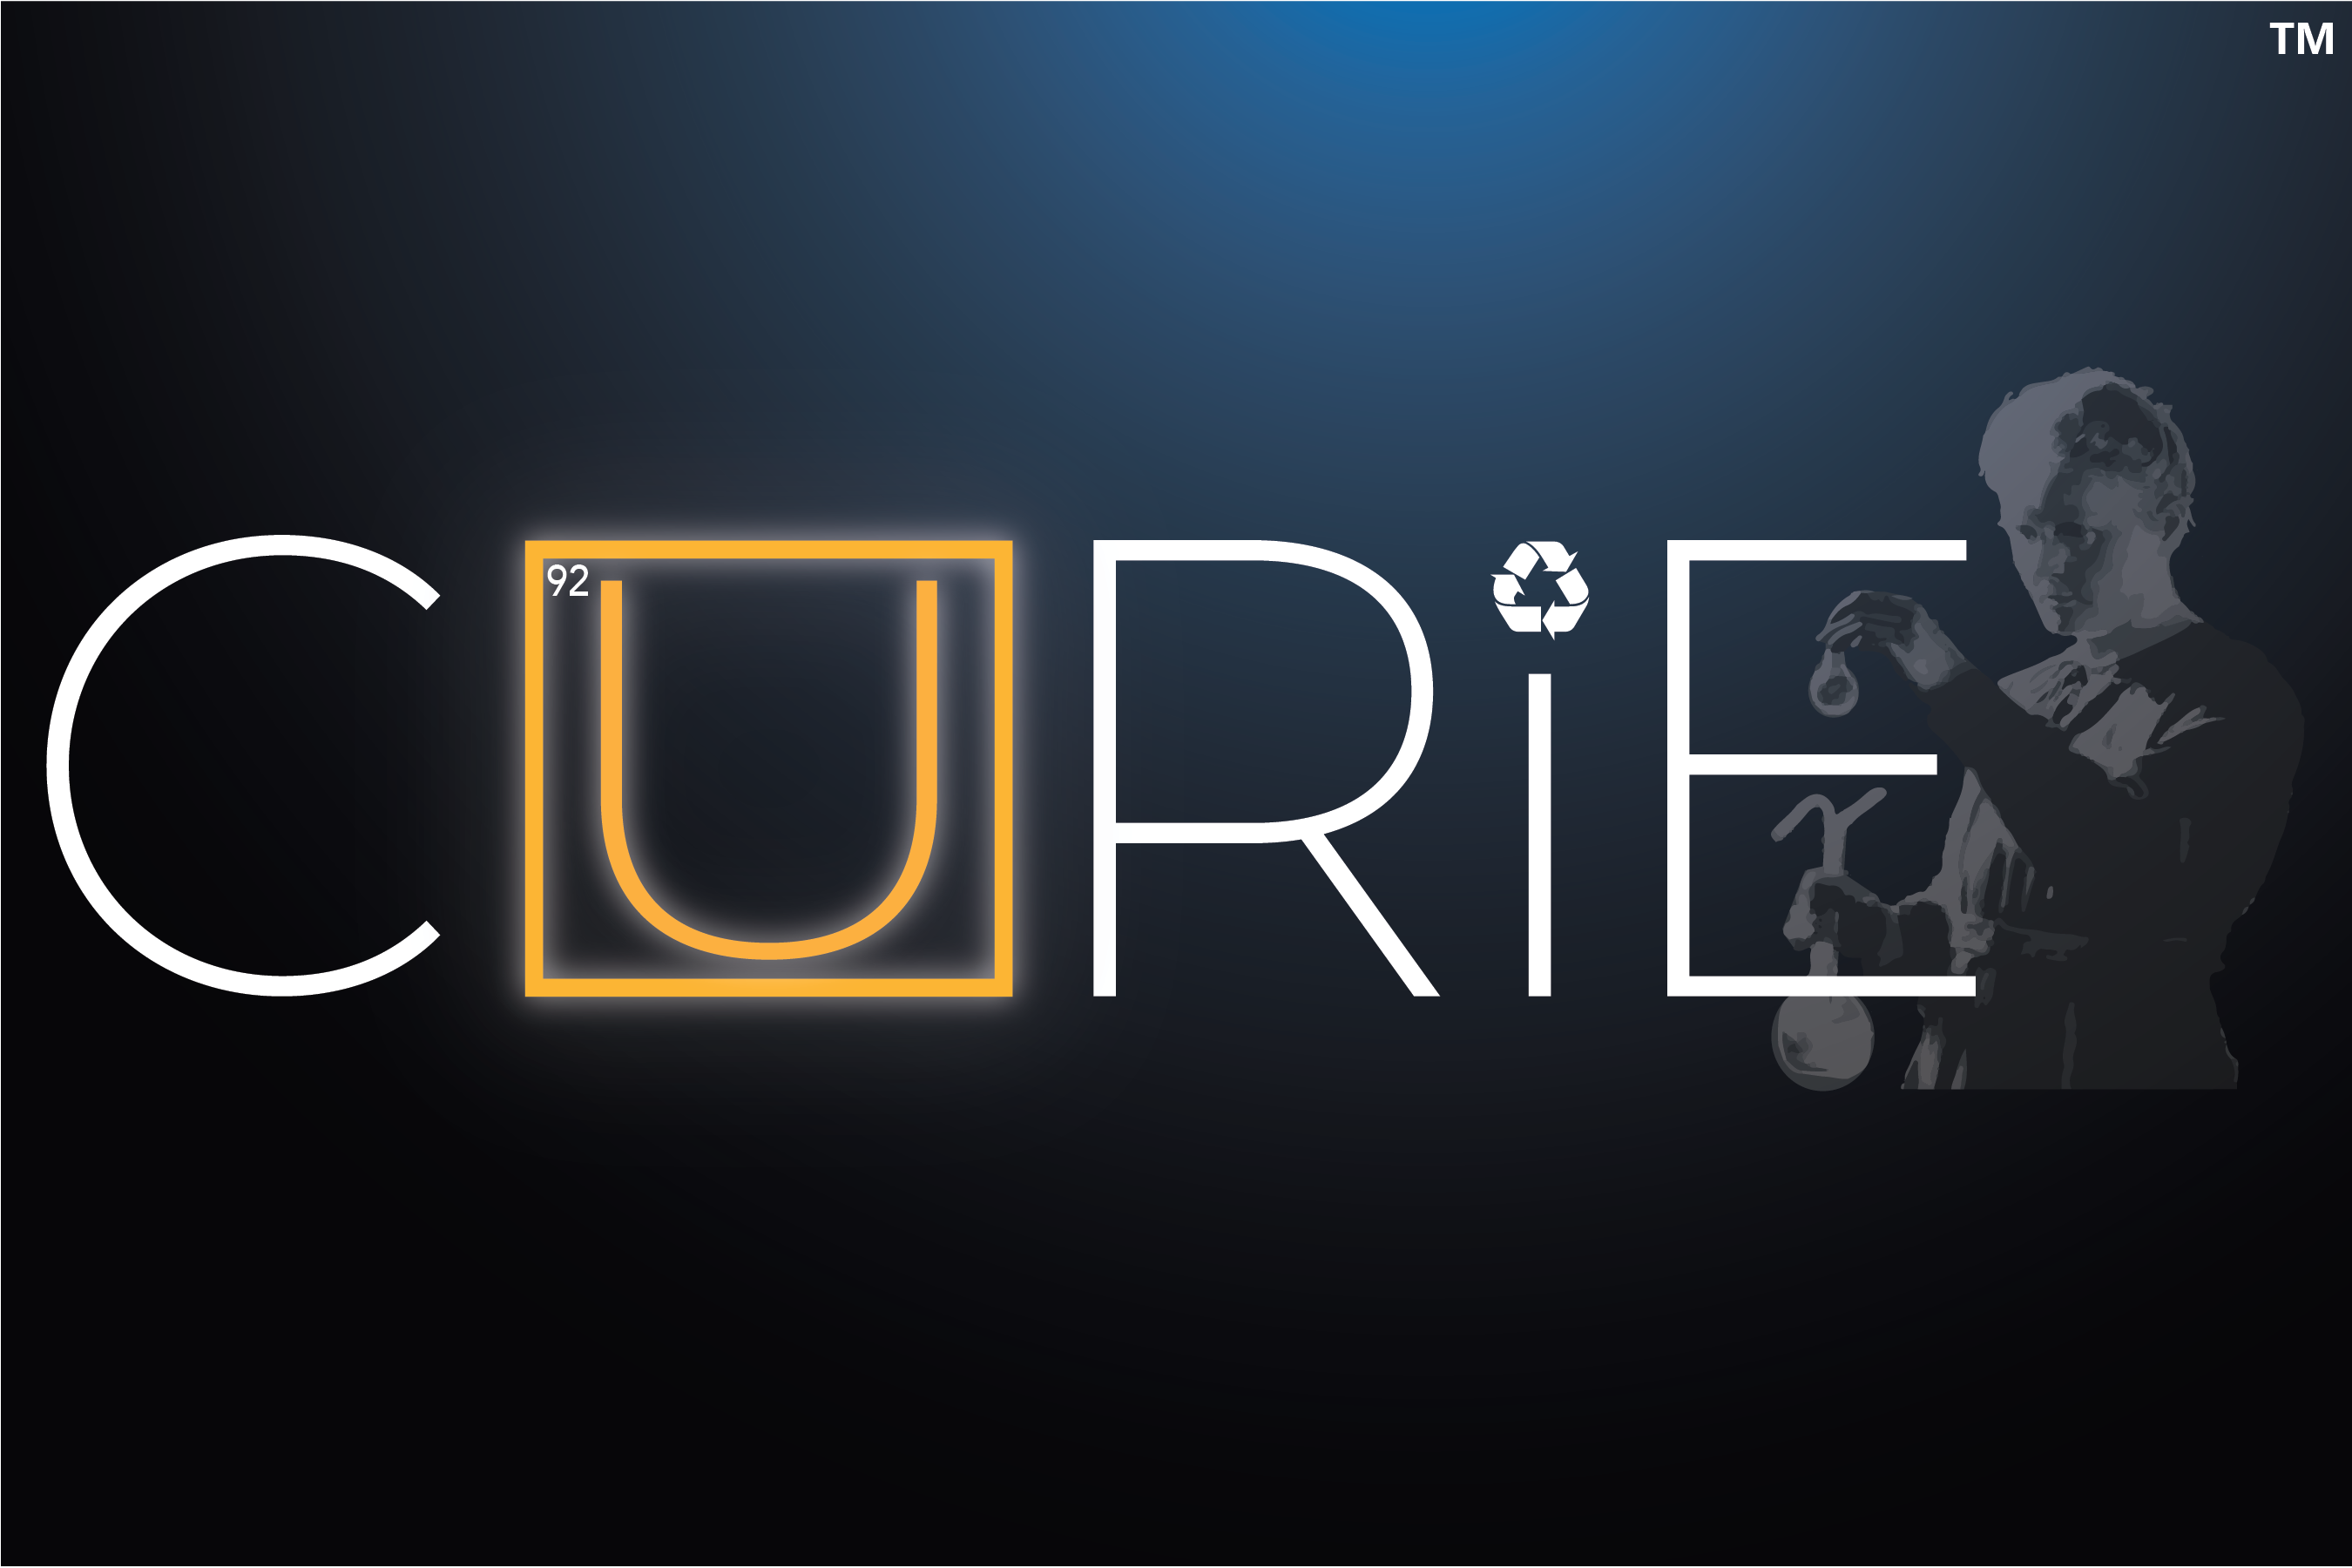 ARPA-E CURIE Program